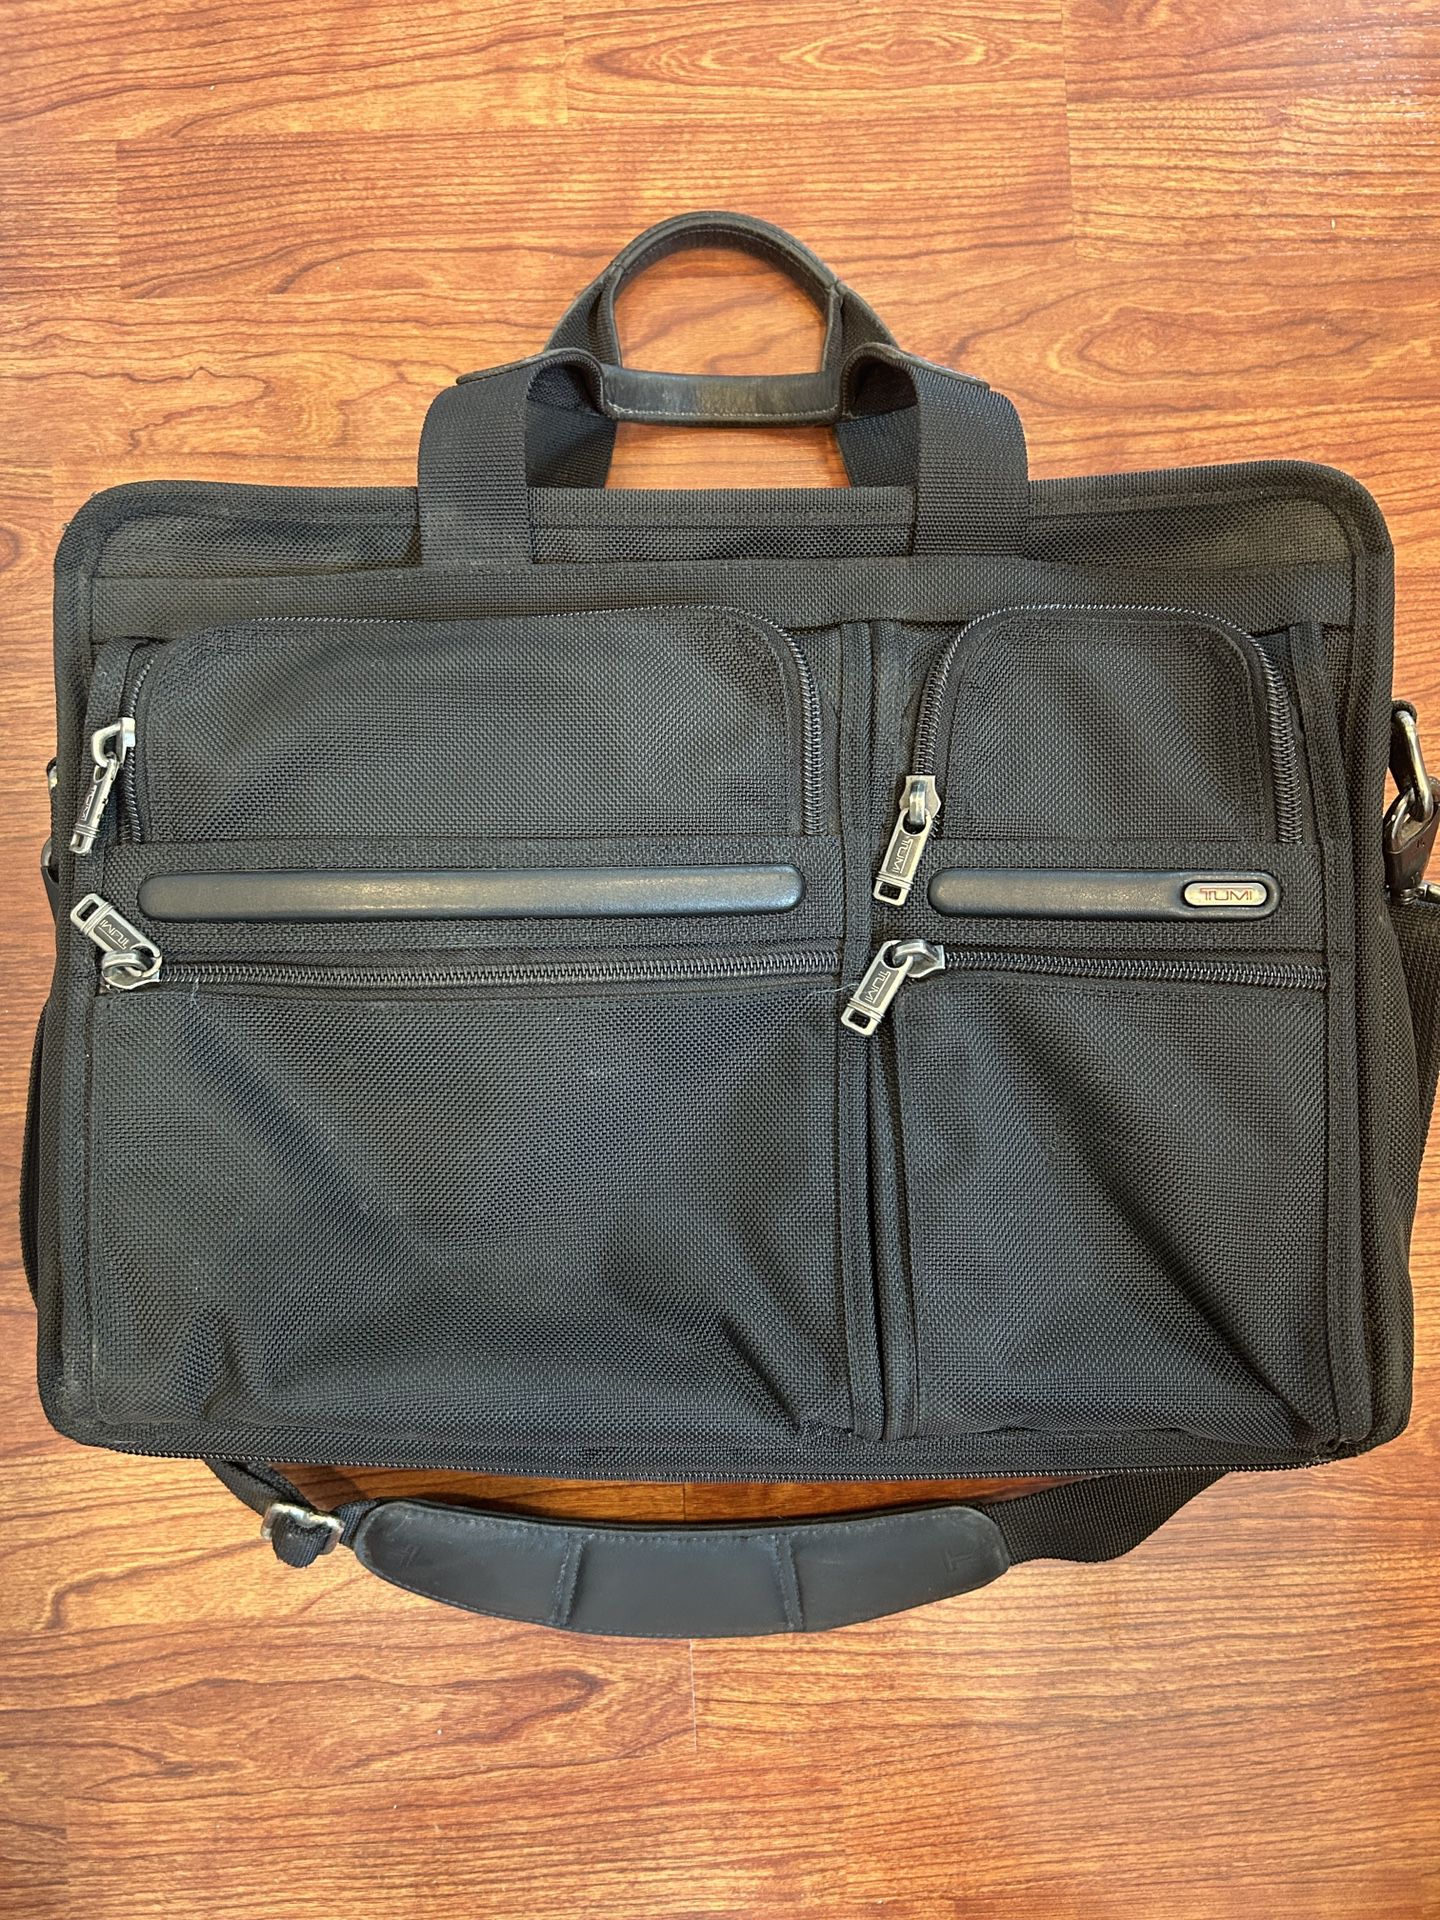 Tumi Laptop Bag / Brief Case